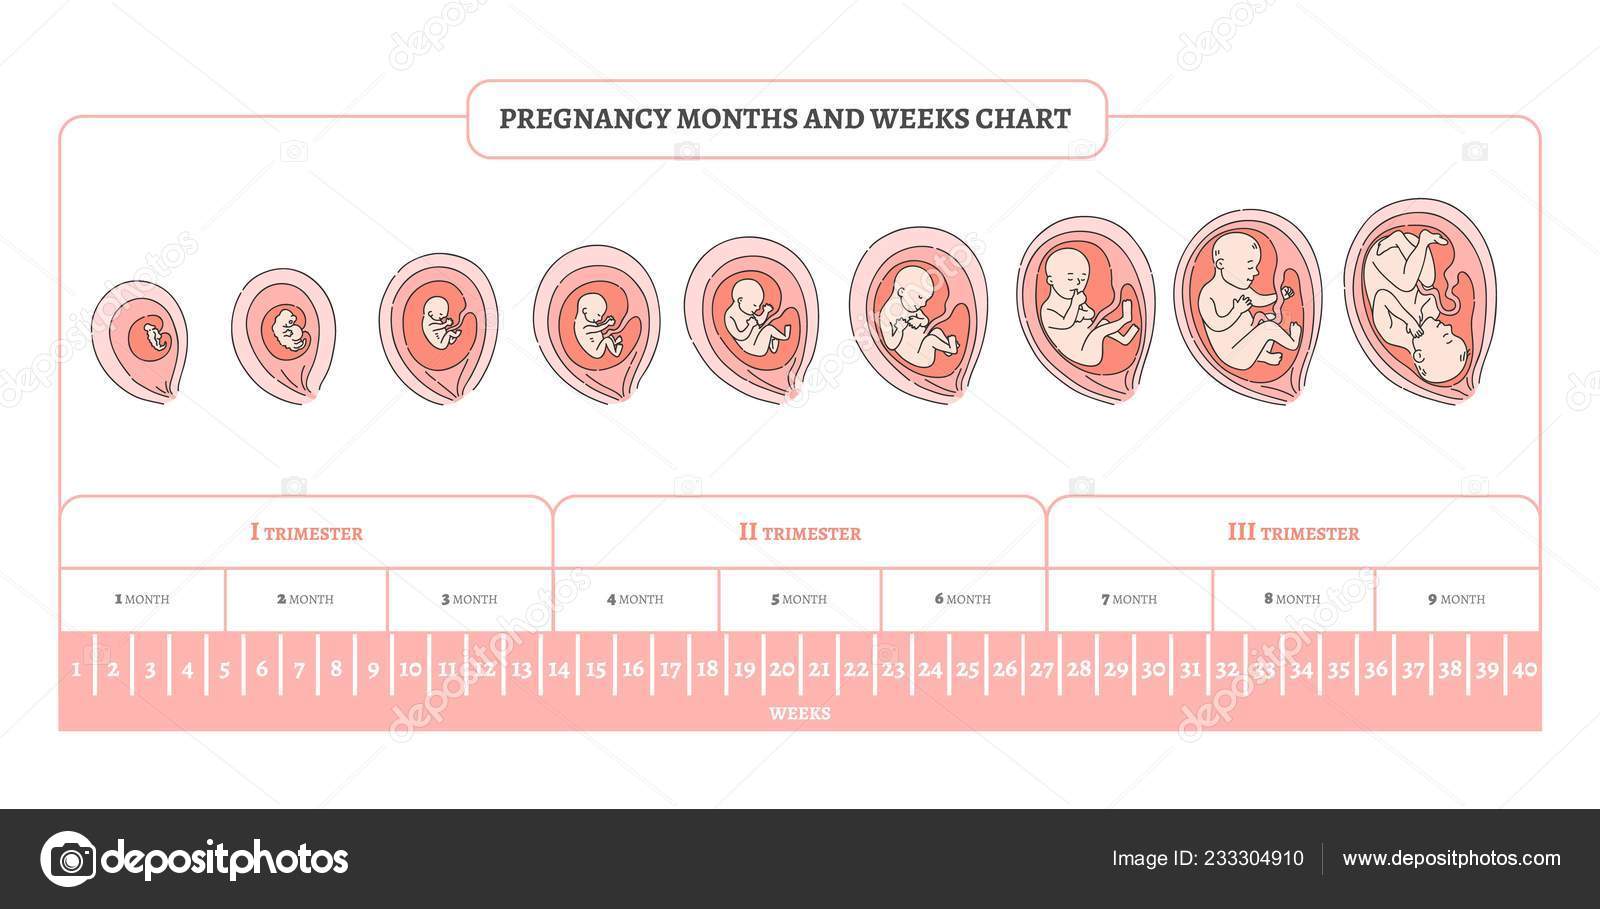 51 неделя какой месяц. Периоды развития плода по неделям в картинках. Стадии формирования плода по неделям беременности. Триместры беременности по неделям и месяцам таблица. Периоды развития плода по триместрам.